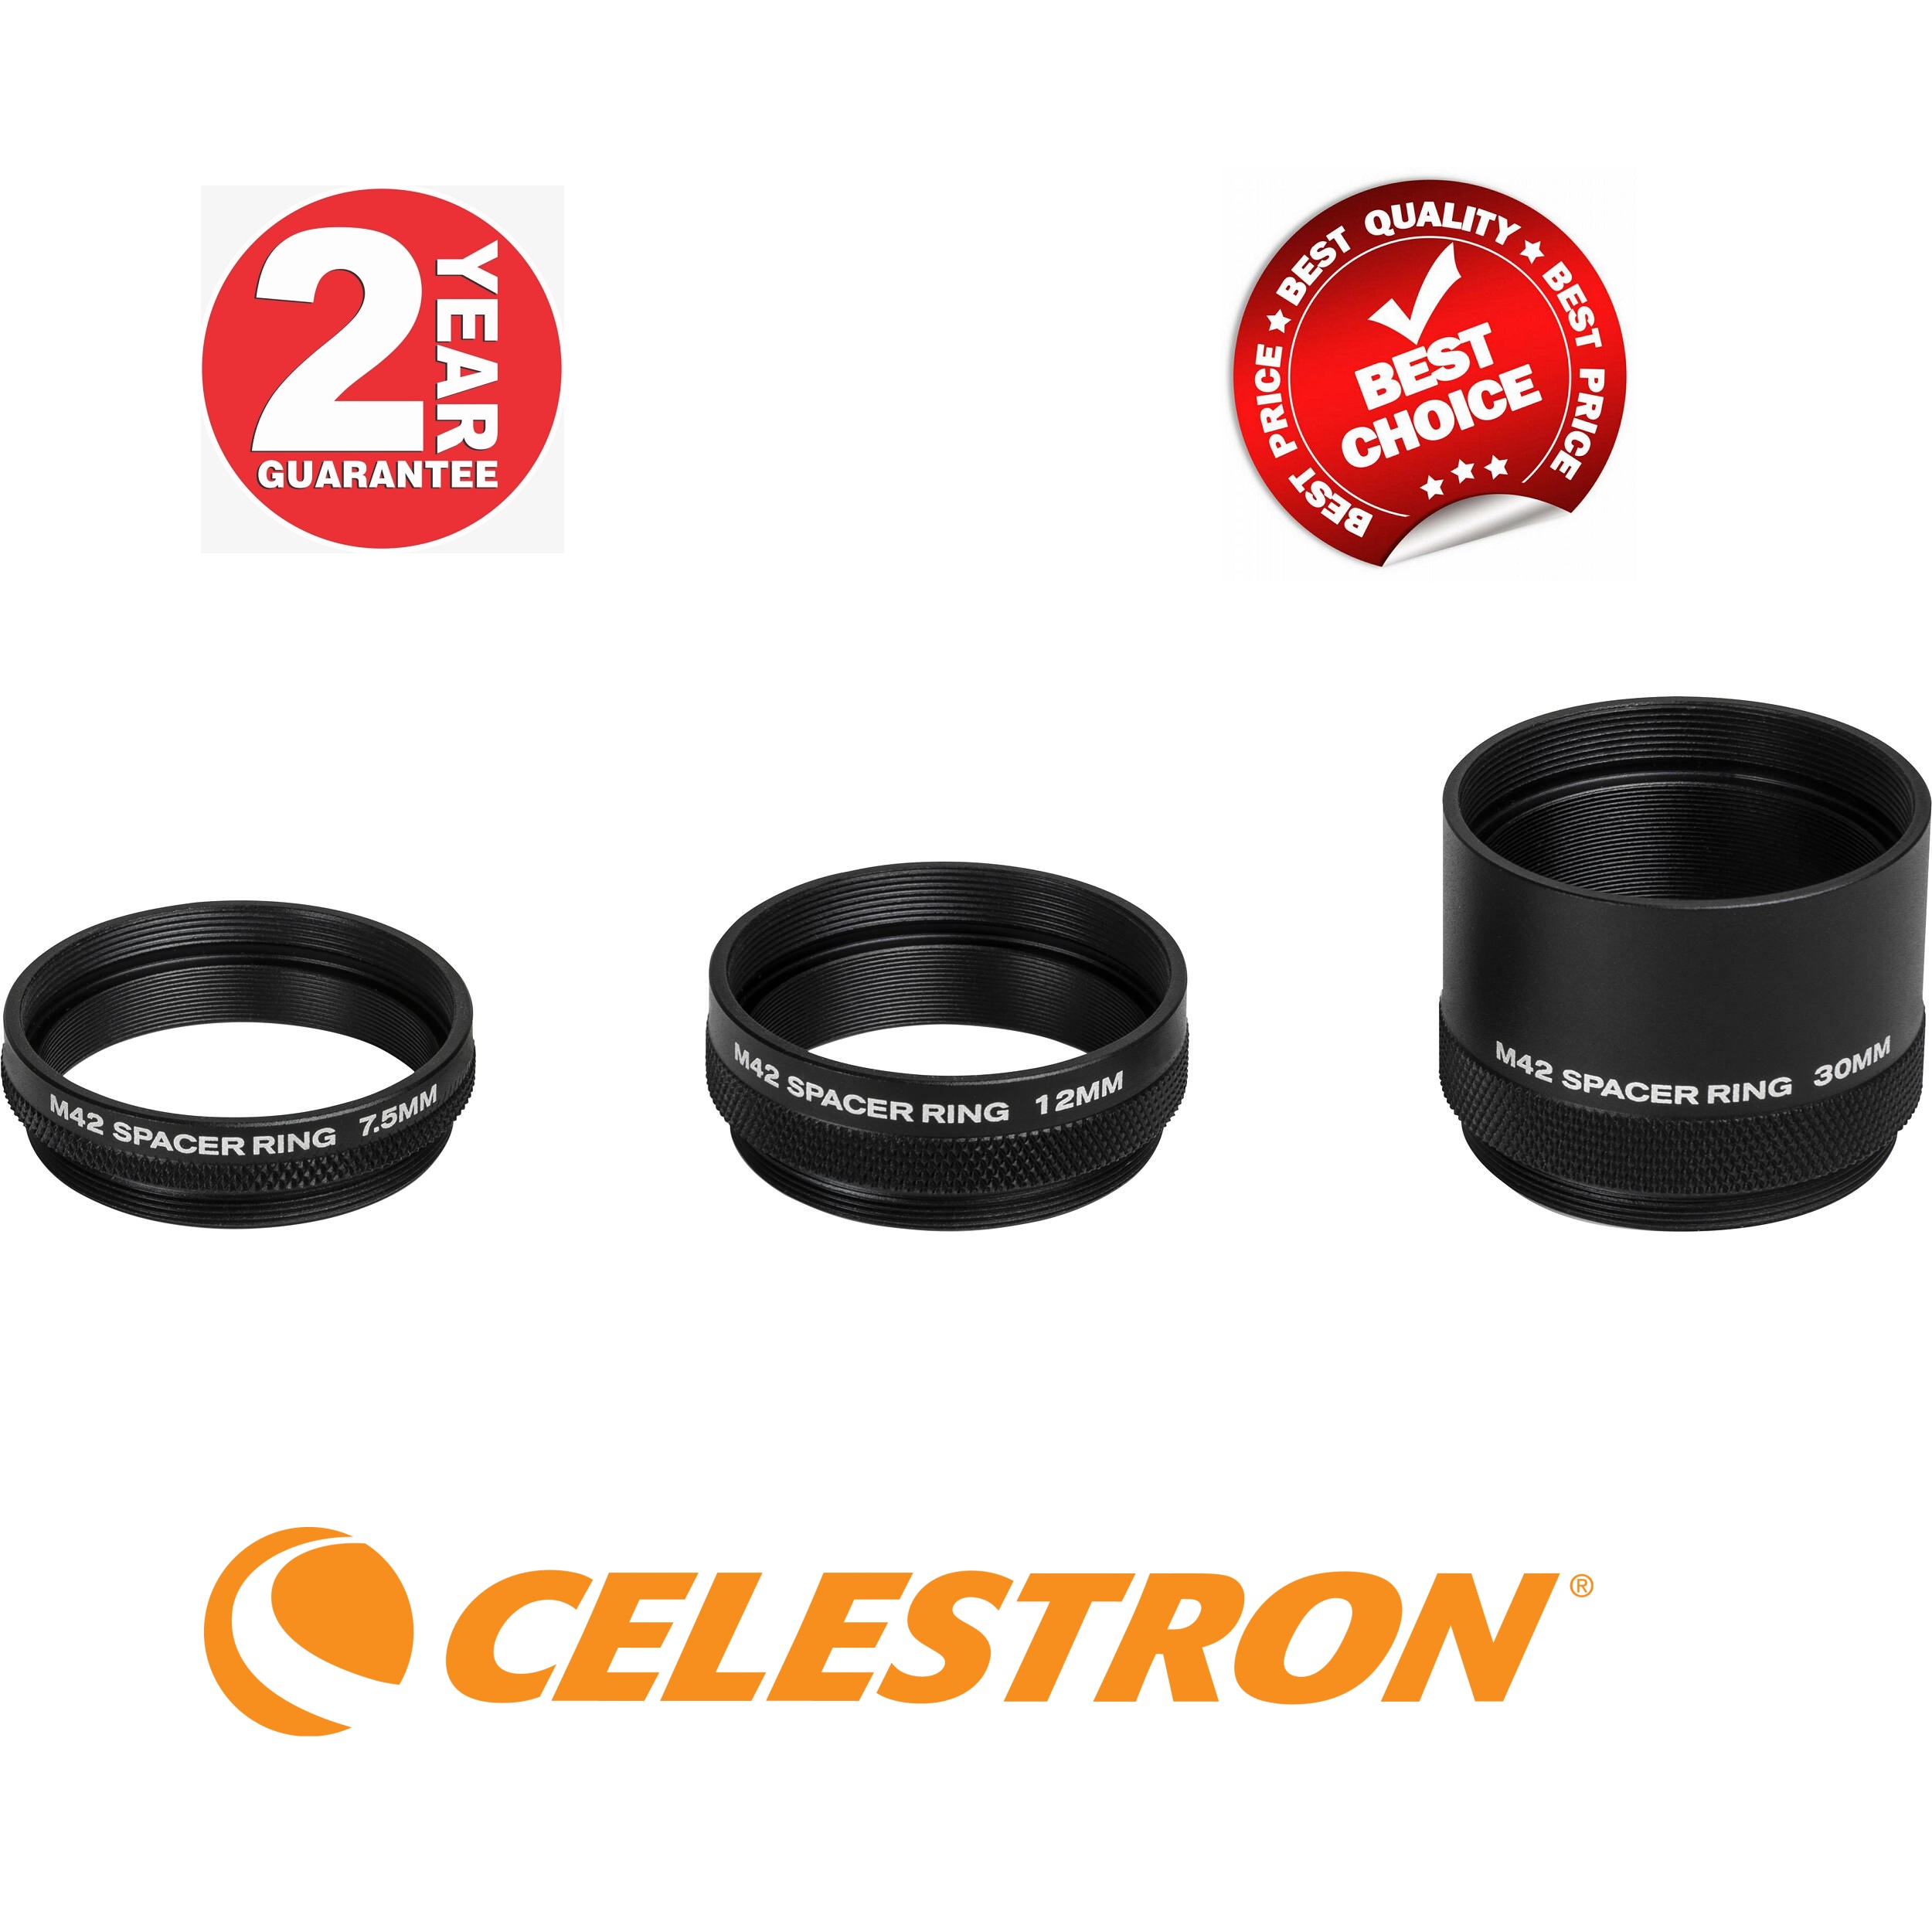 Celestron M42 Spacer Ring Kit